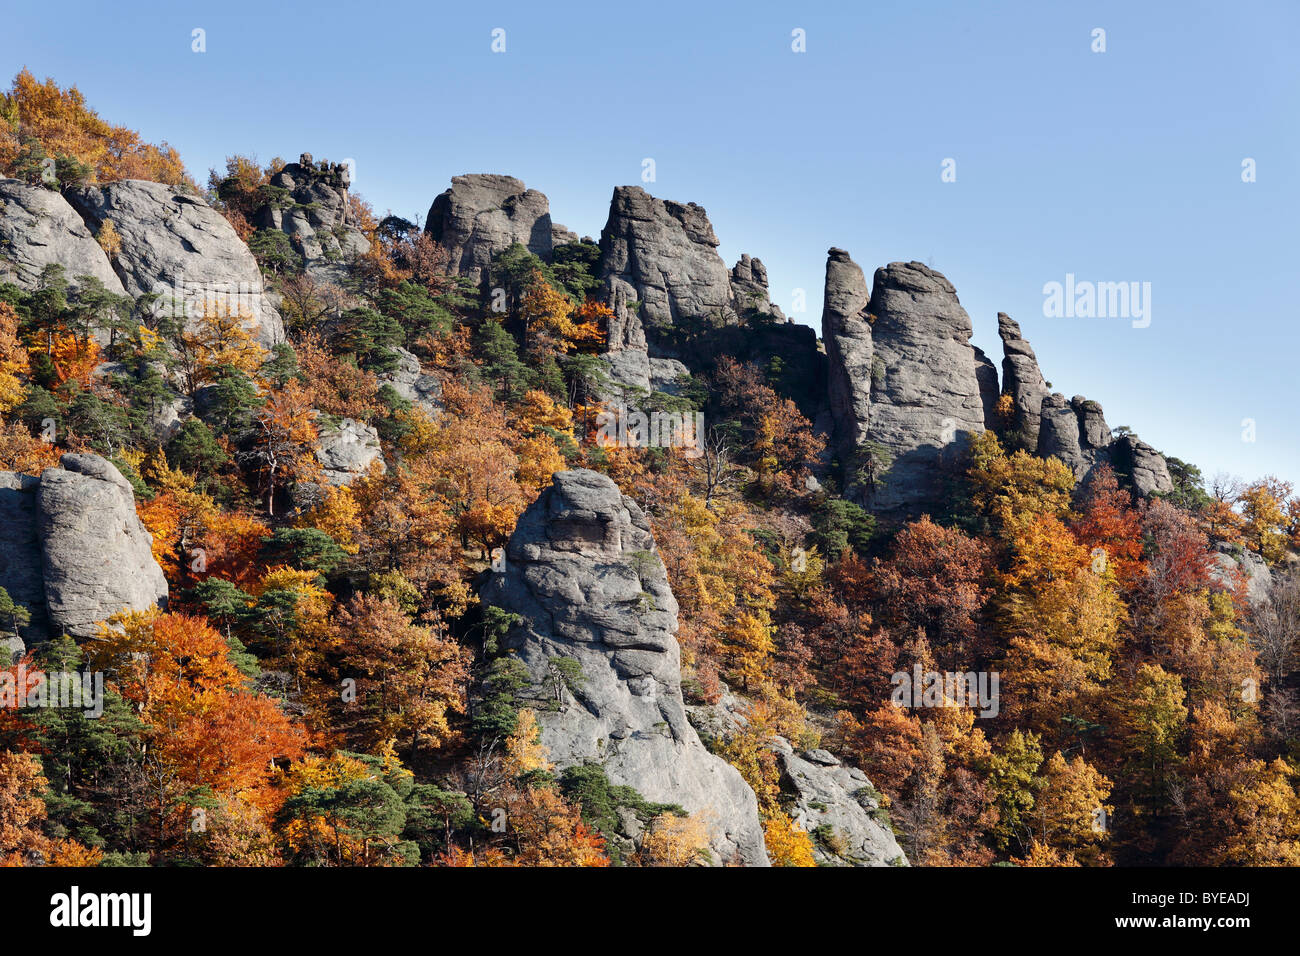 Rocks and woodland in autumn, located above Duernstein castle ruin, Wachau valley, Waldviertel region, Lower Austria, Austria Stock Photo